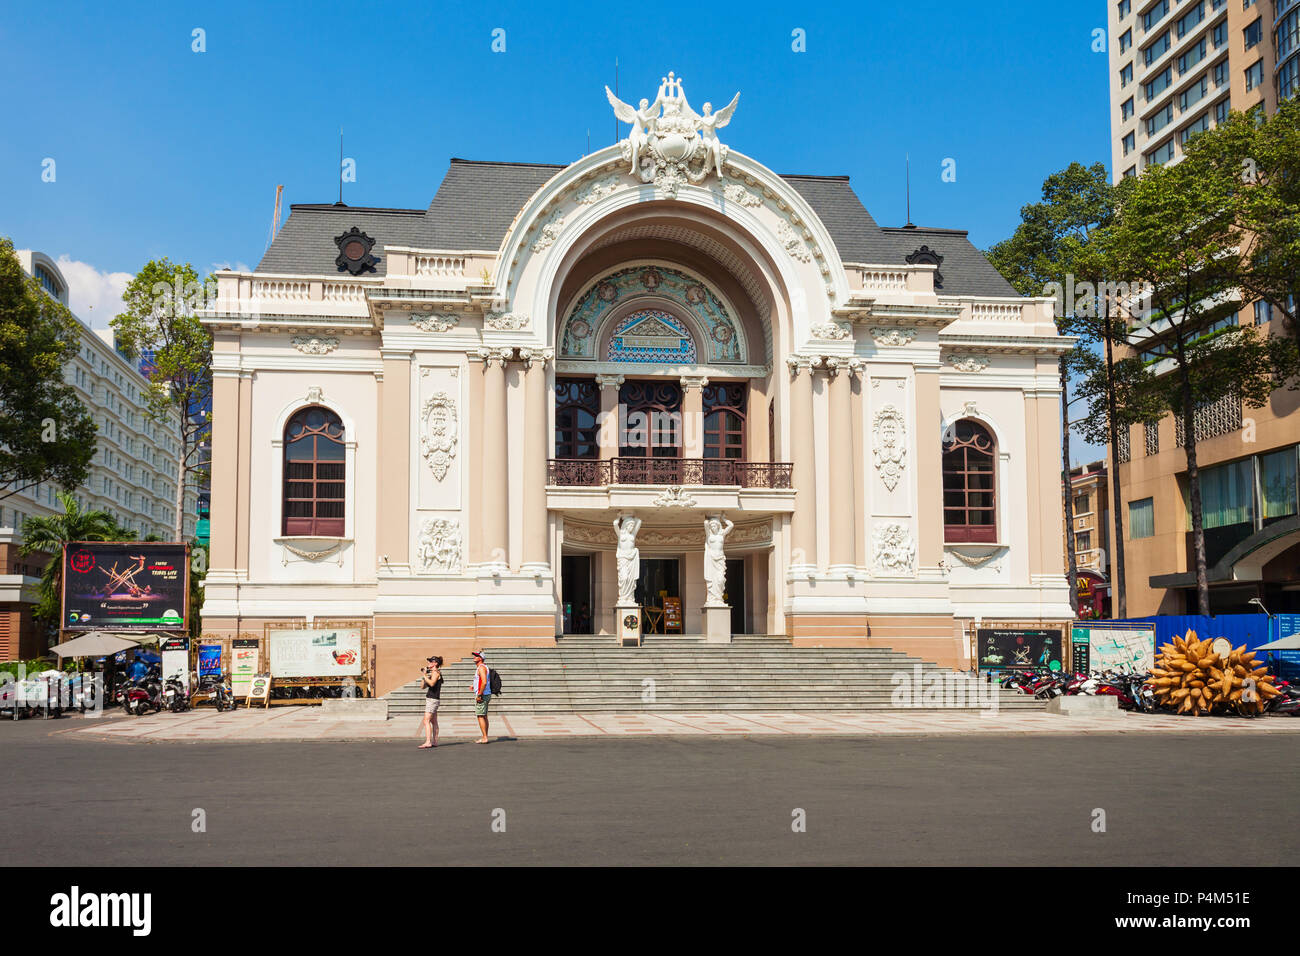 HO CHI MINH, VIETNAM - MÄRZ 08, 2018: Das Stadttheater von Ho Chi Minh City oder Saigon Opernhaus ein Opernhaus in Ho Chi Minh City in Vietna Stockfoto